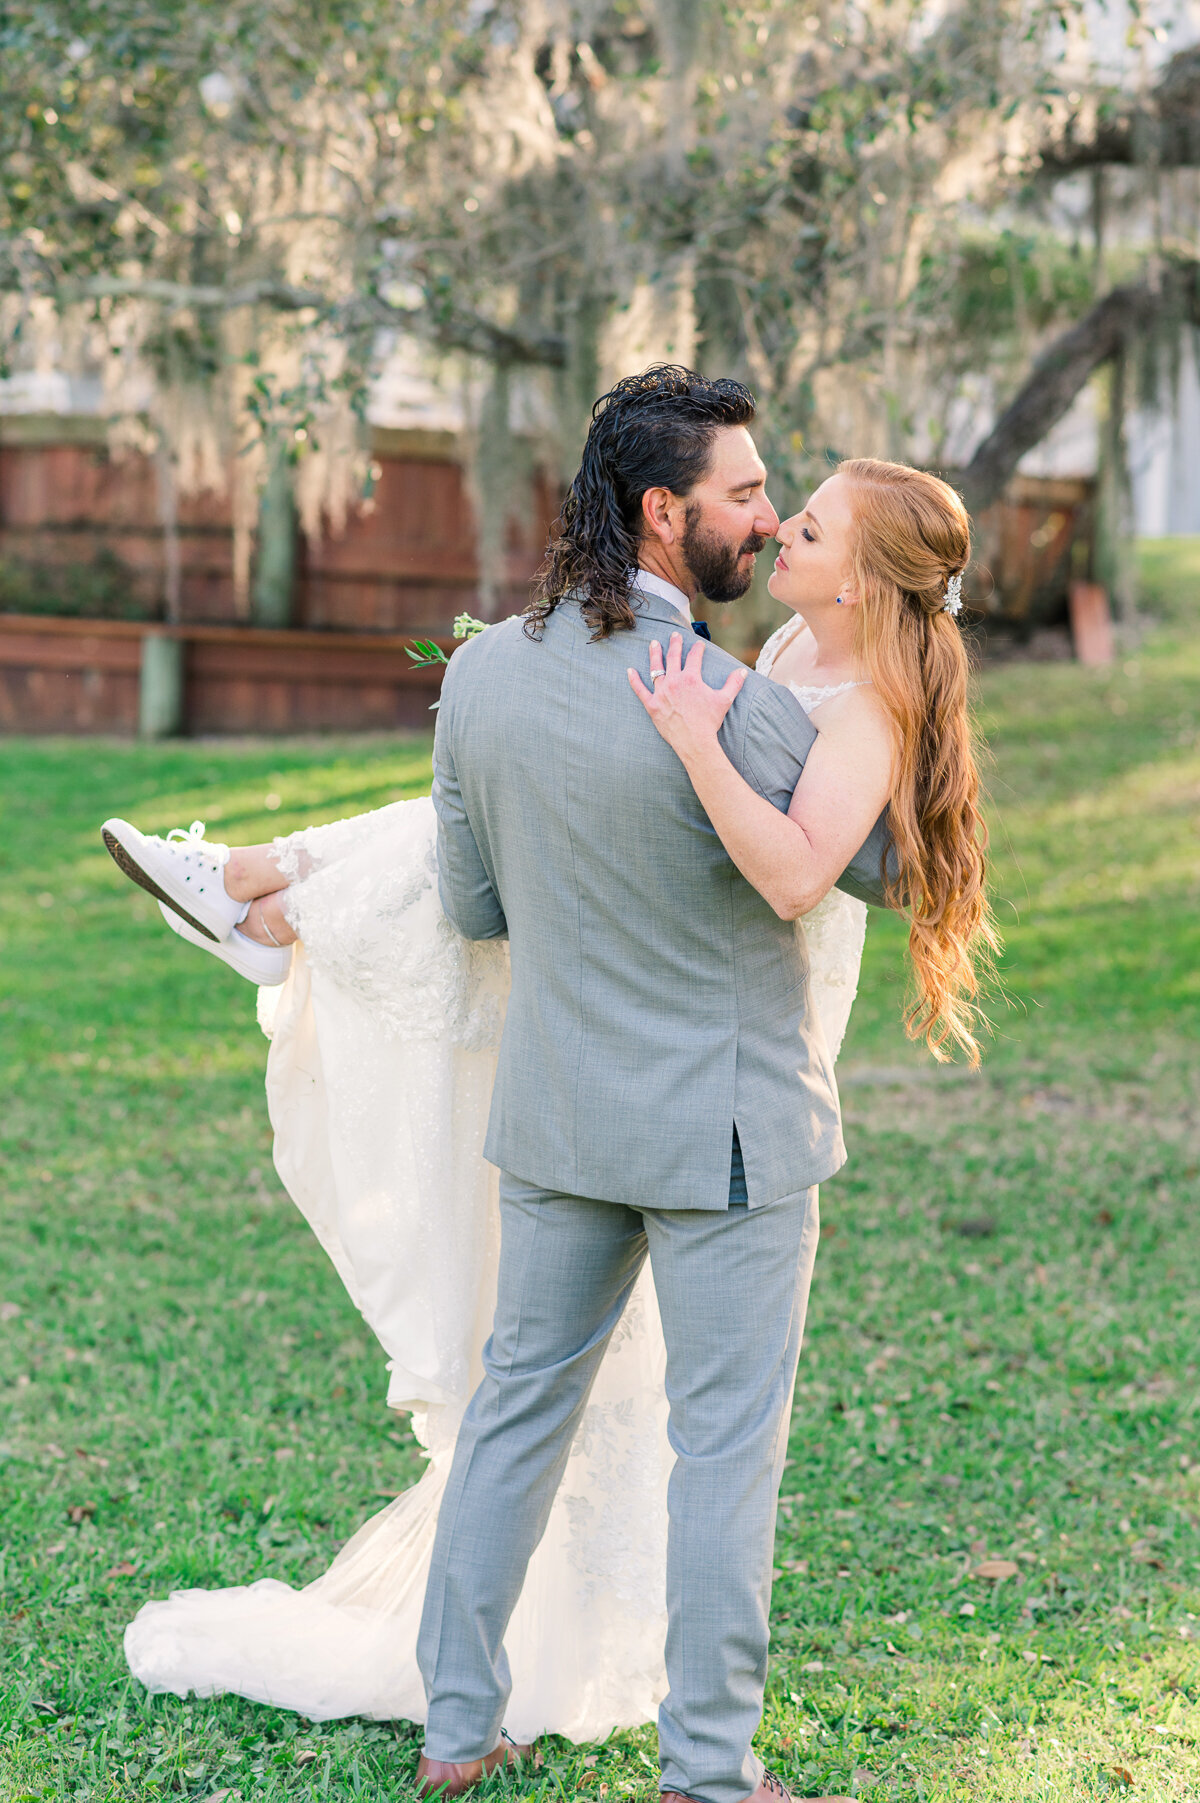 Nicole & Evan | Up the Creek Farms Wedding | Lisa Marshall Photography-22